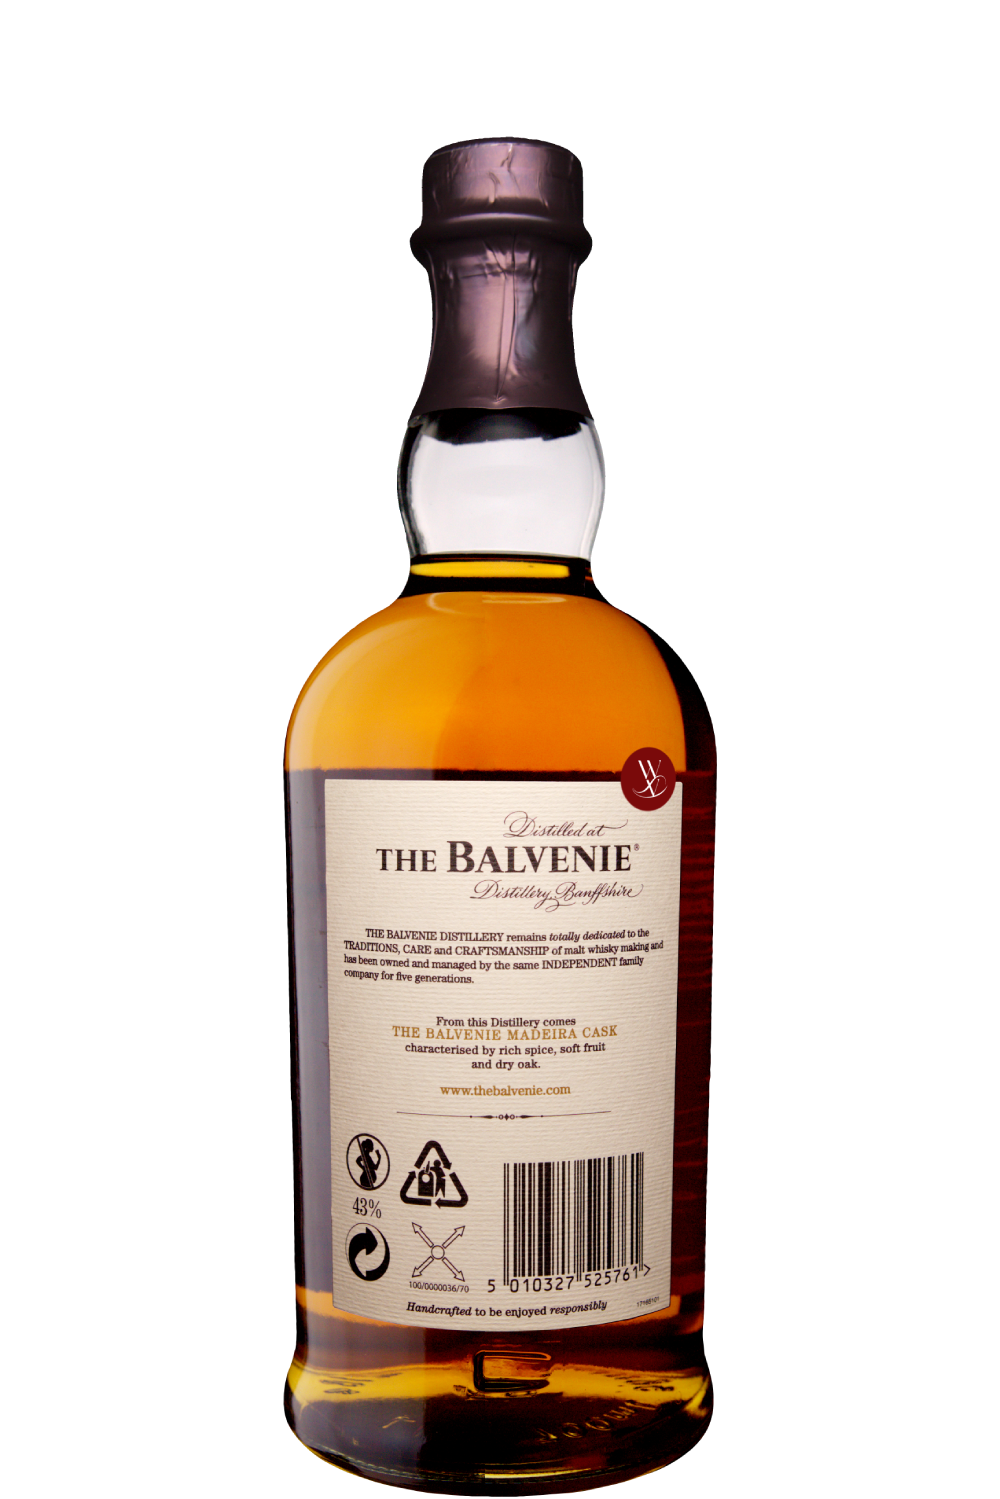 WineVins Whisky The Balvenie Madeira Cask 17 Anos NV